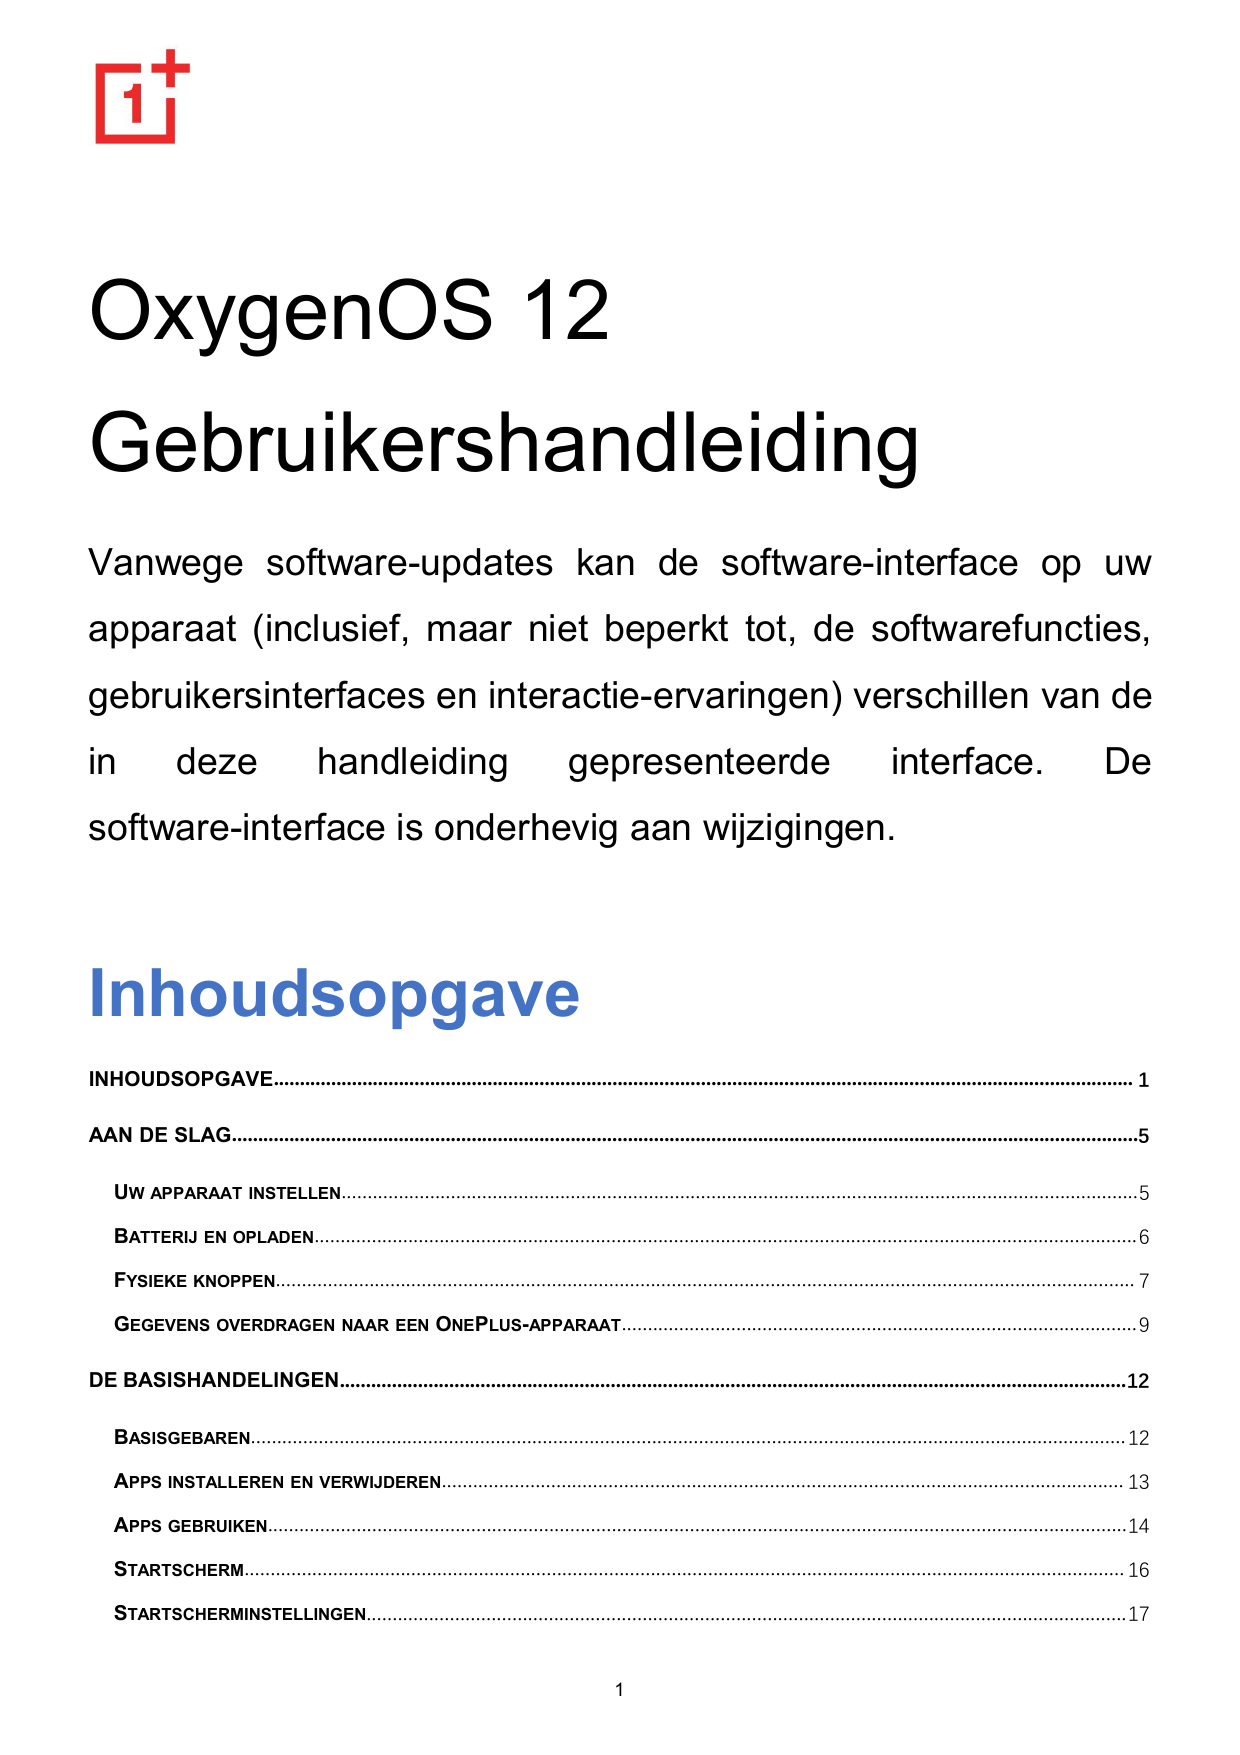 OxygenOS 12GebruikershandleidingVanwege software-updates kan de software-interface op uwapparaat (inclusief, maar niet beperkt t